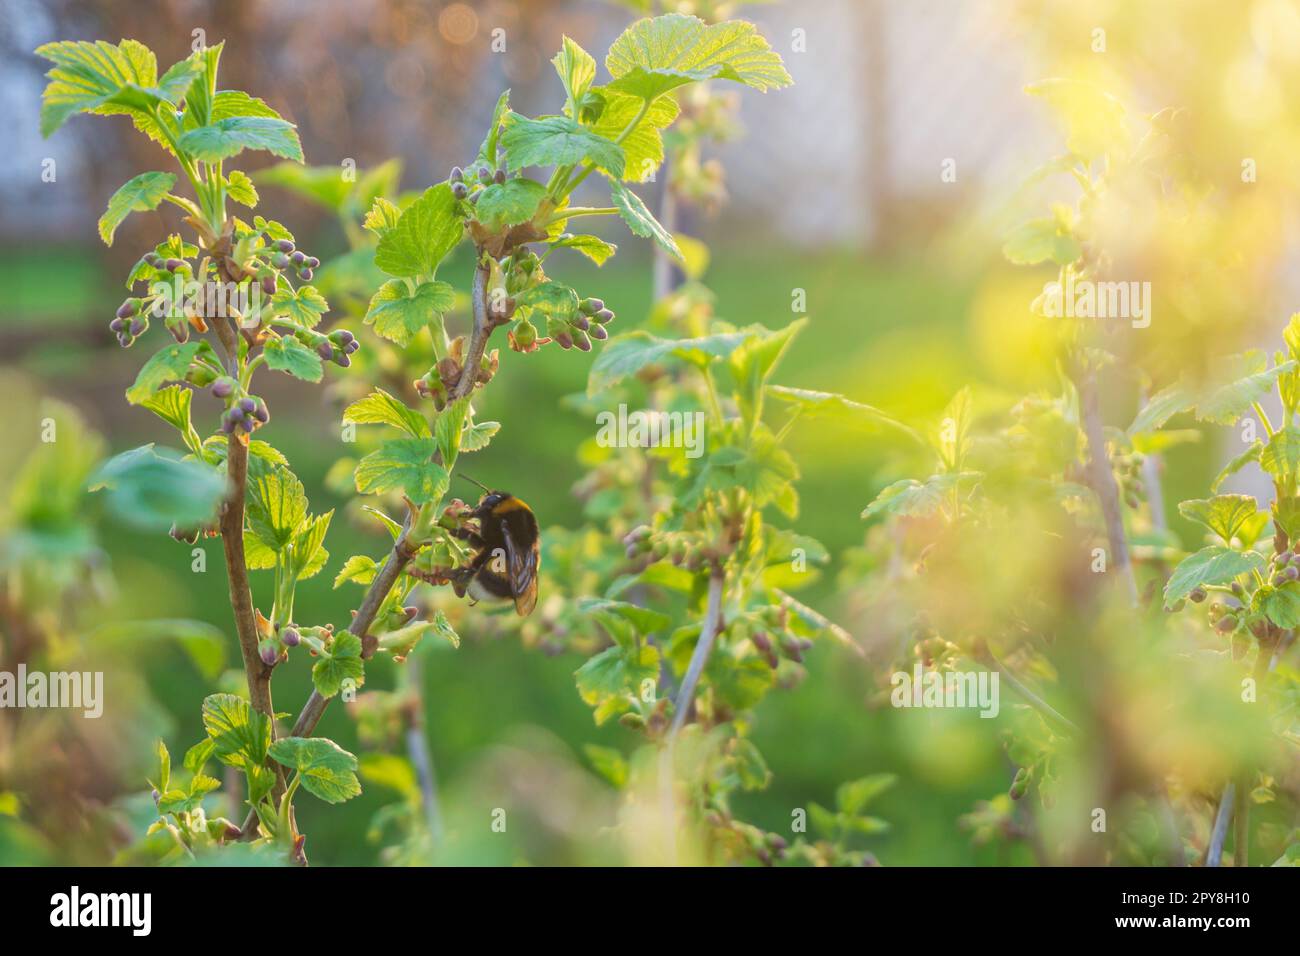 Sprout et bourgeons de Black Currant ou Ribes nigrum en Sring. Jeunes feuilles vertes, pollinisation des fleurs des bourdons. Banque D'Images